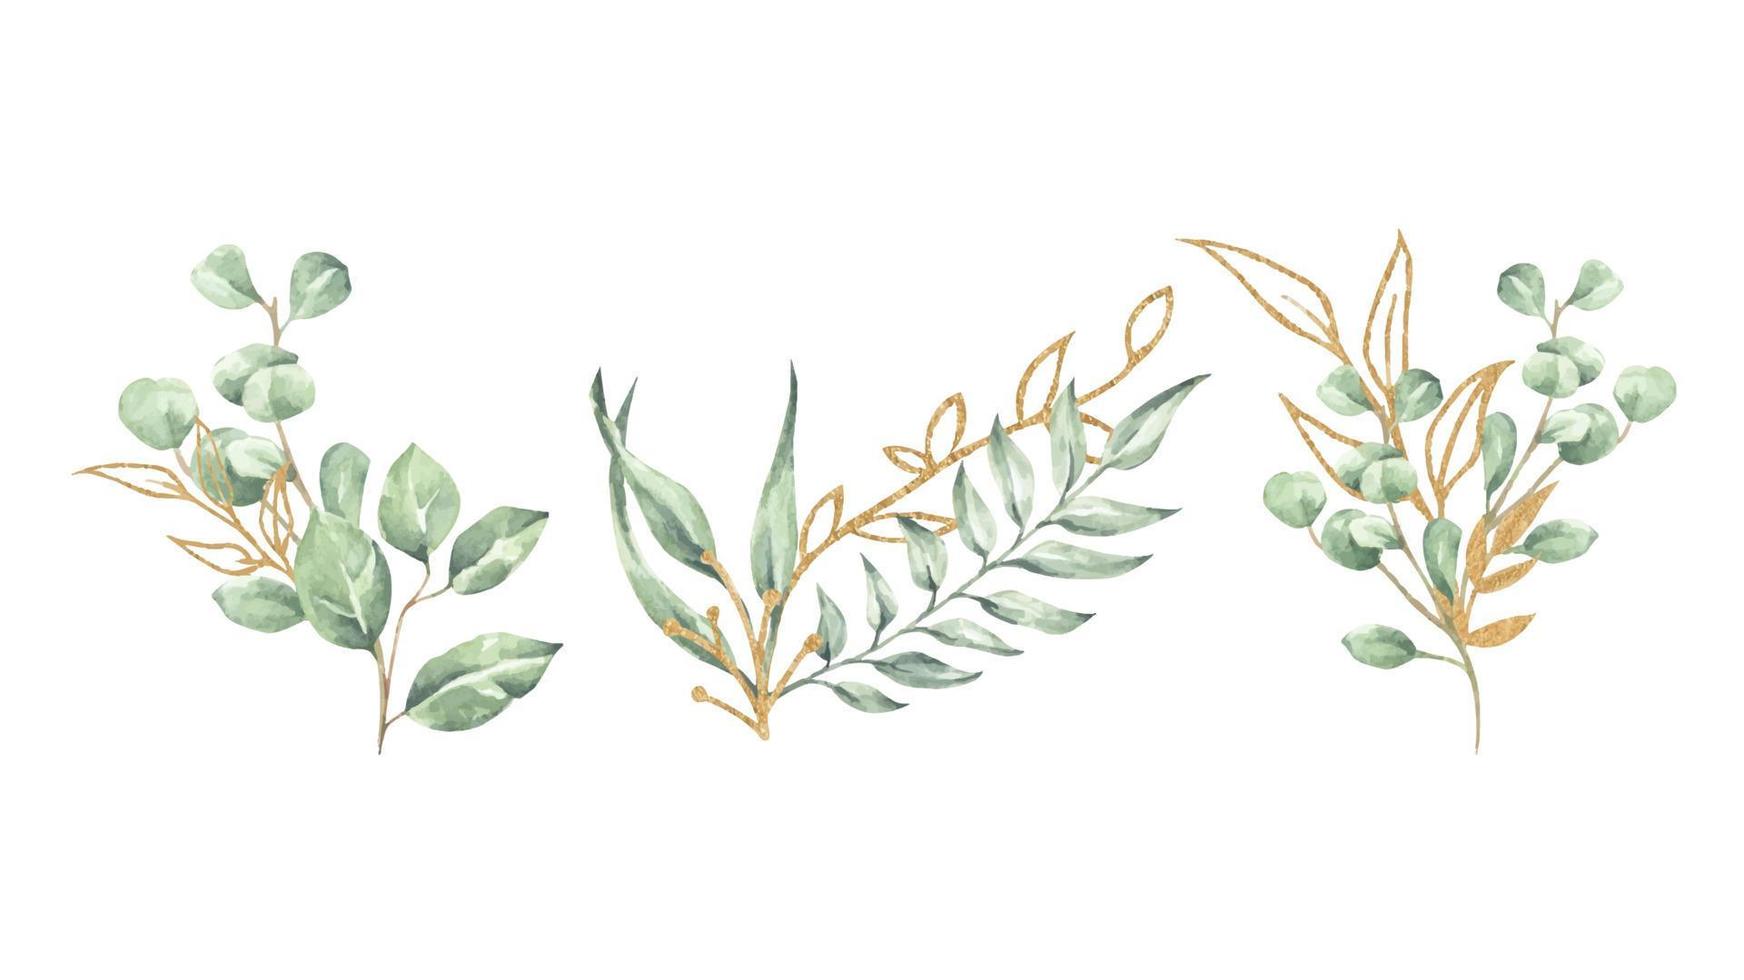 ensemble d'illustrations florales à l'aquarelle. collection de branches de feuilles vertes et dorées. vecteur